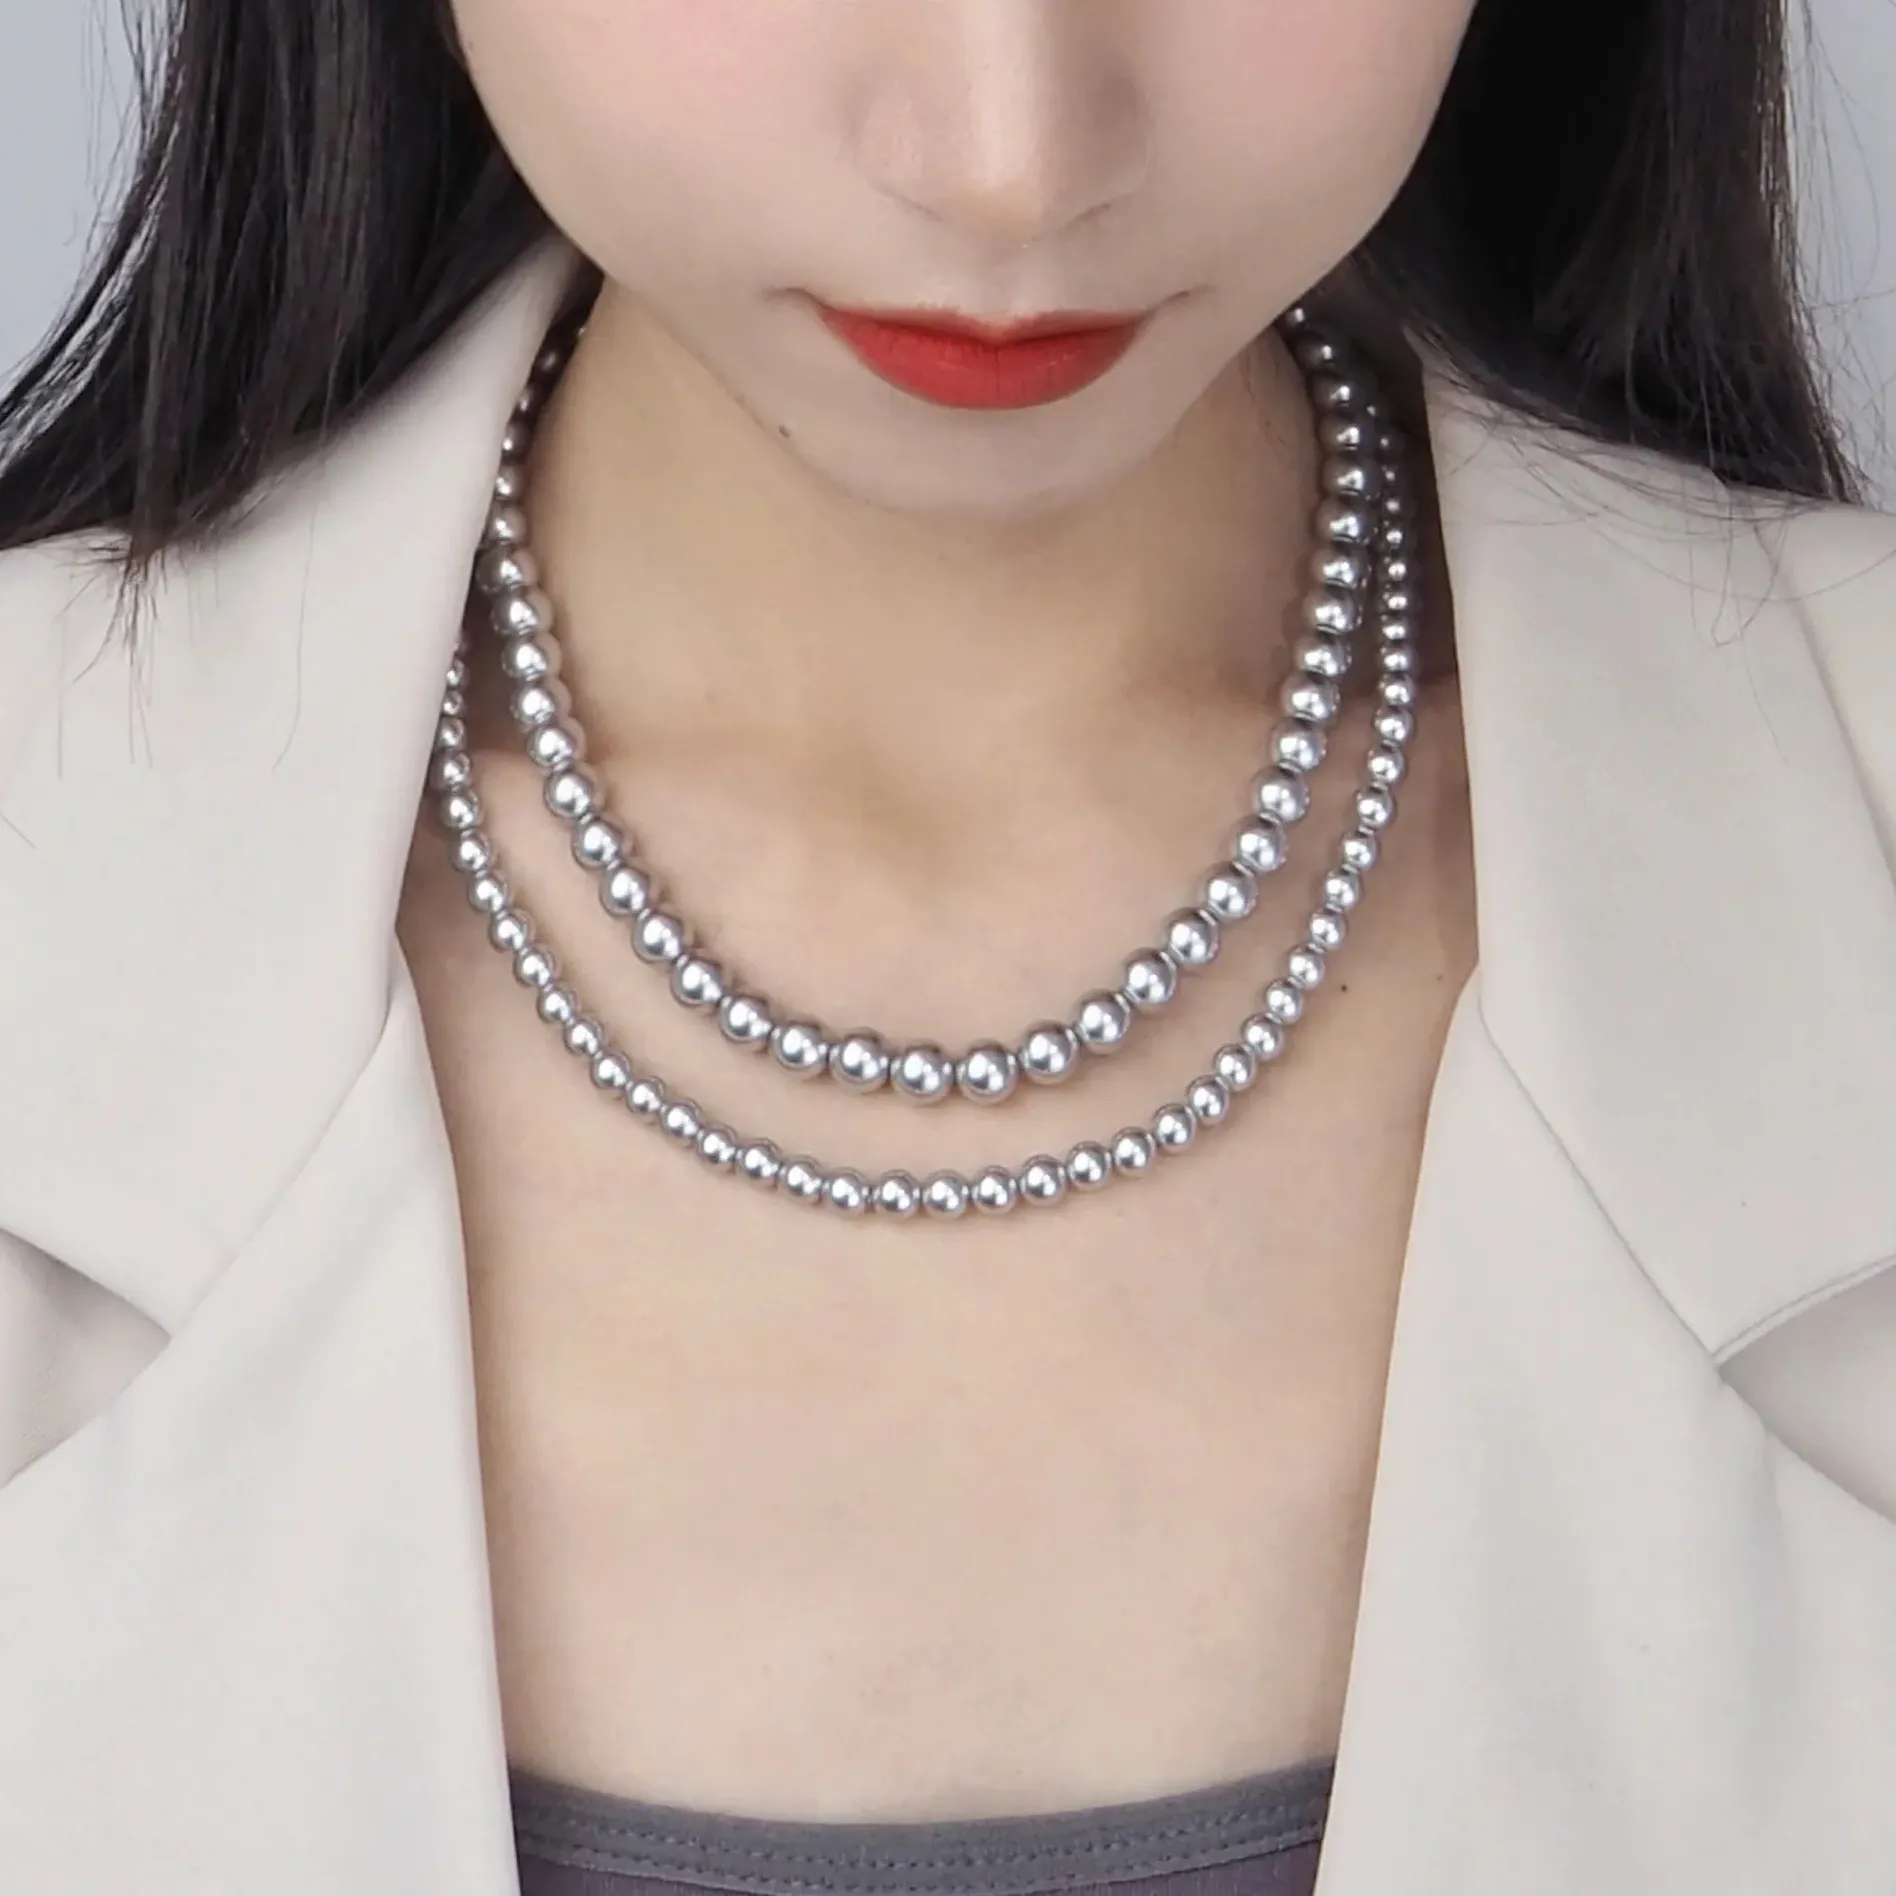 Pur 925 argent Sterling 3mm-10mm haute lumière brillante ronde gris perle perlée chaîne collier pour femmes filles bijoux